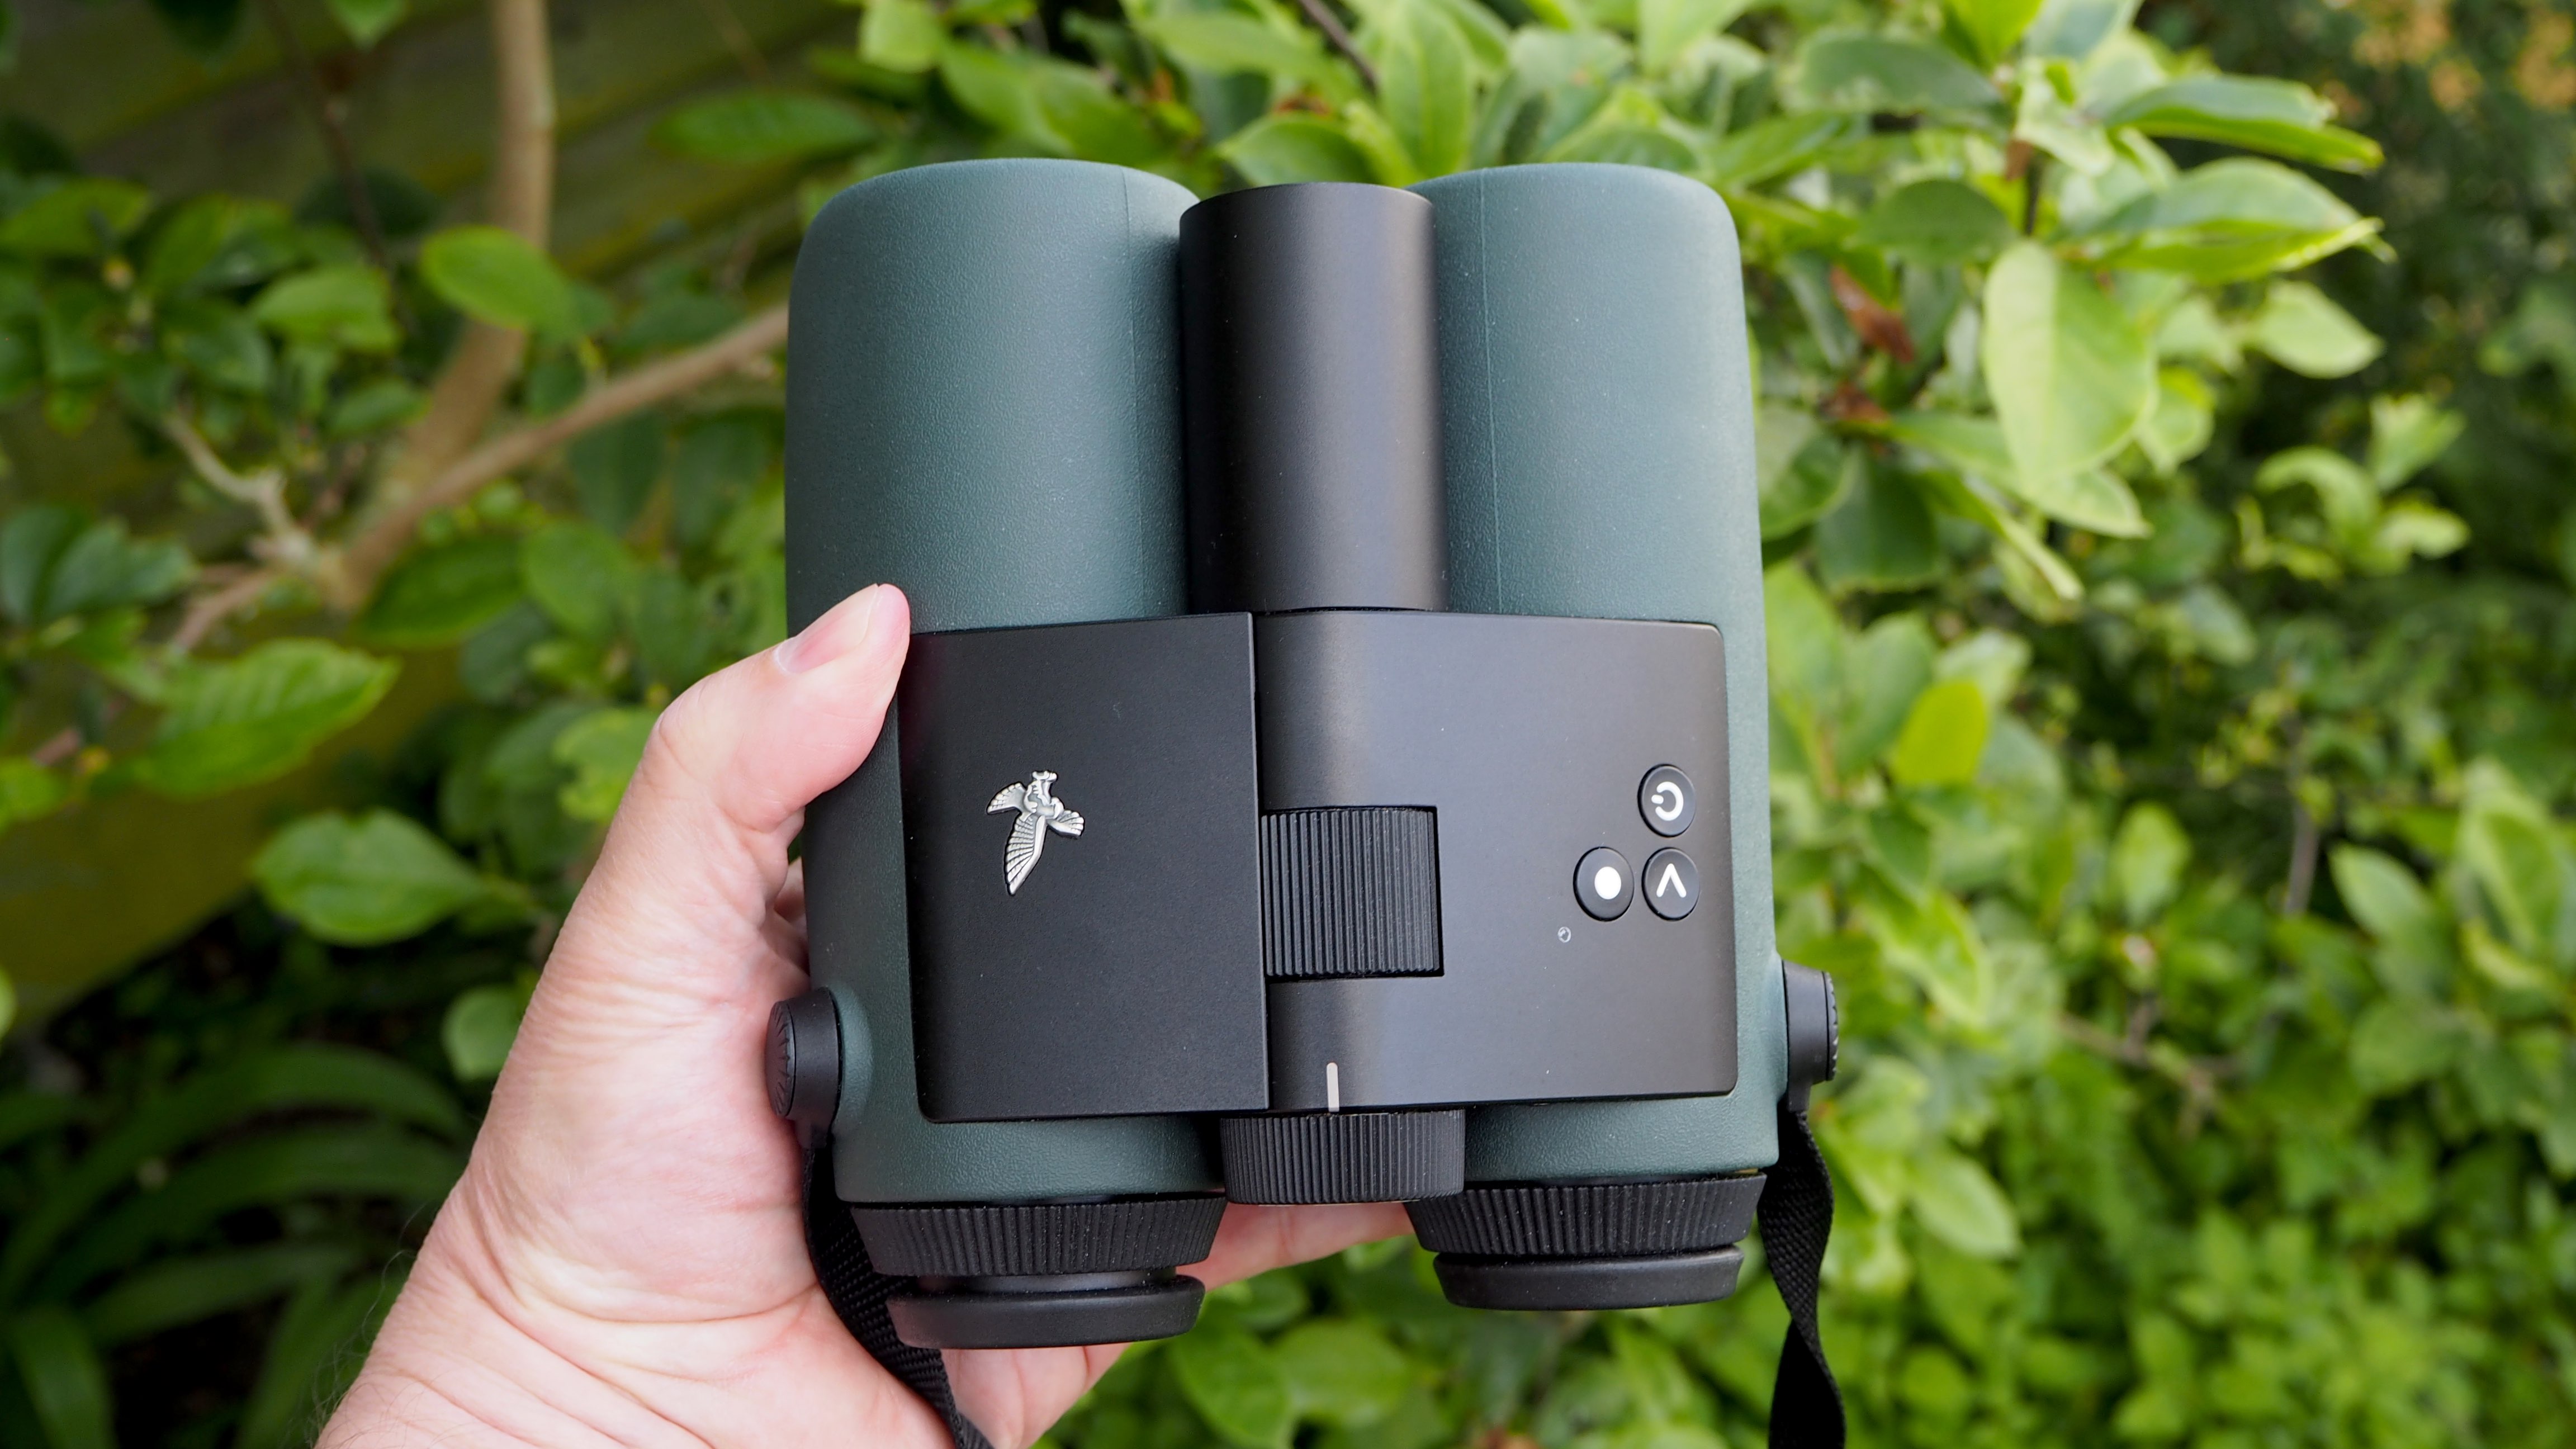 Swarovski AX Visio 10x32 handheld binoculars